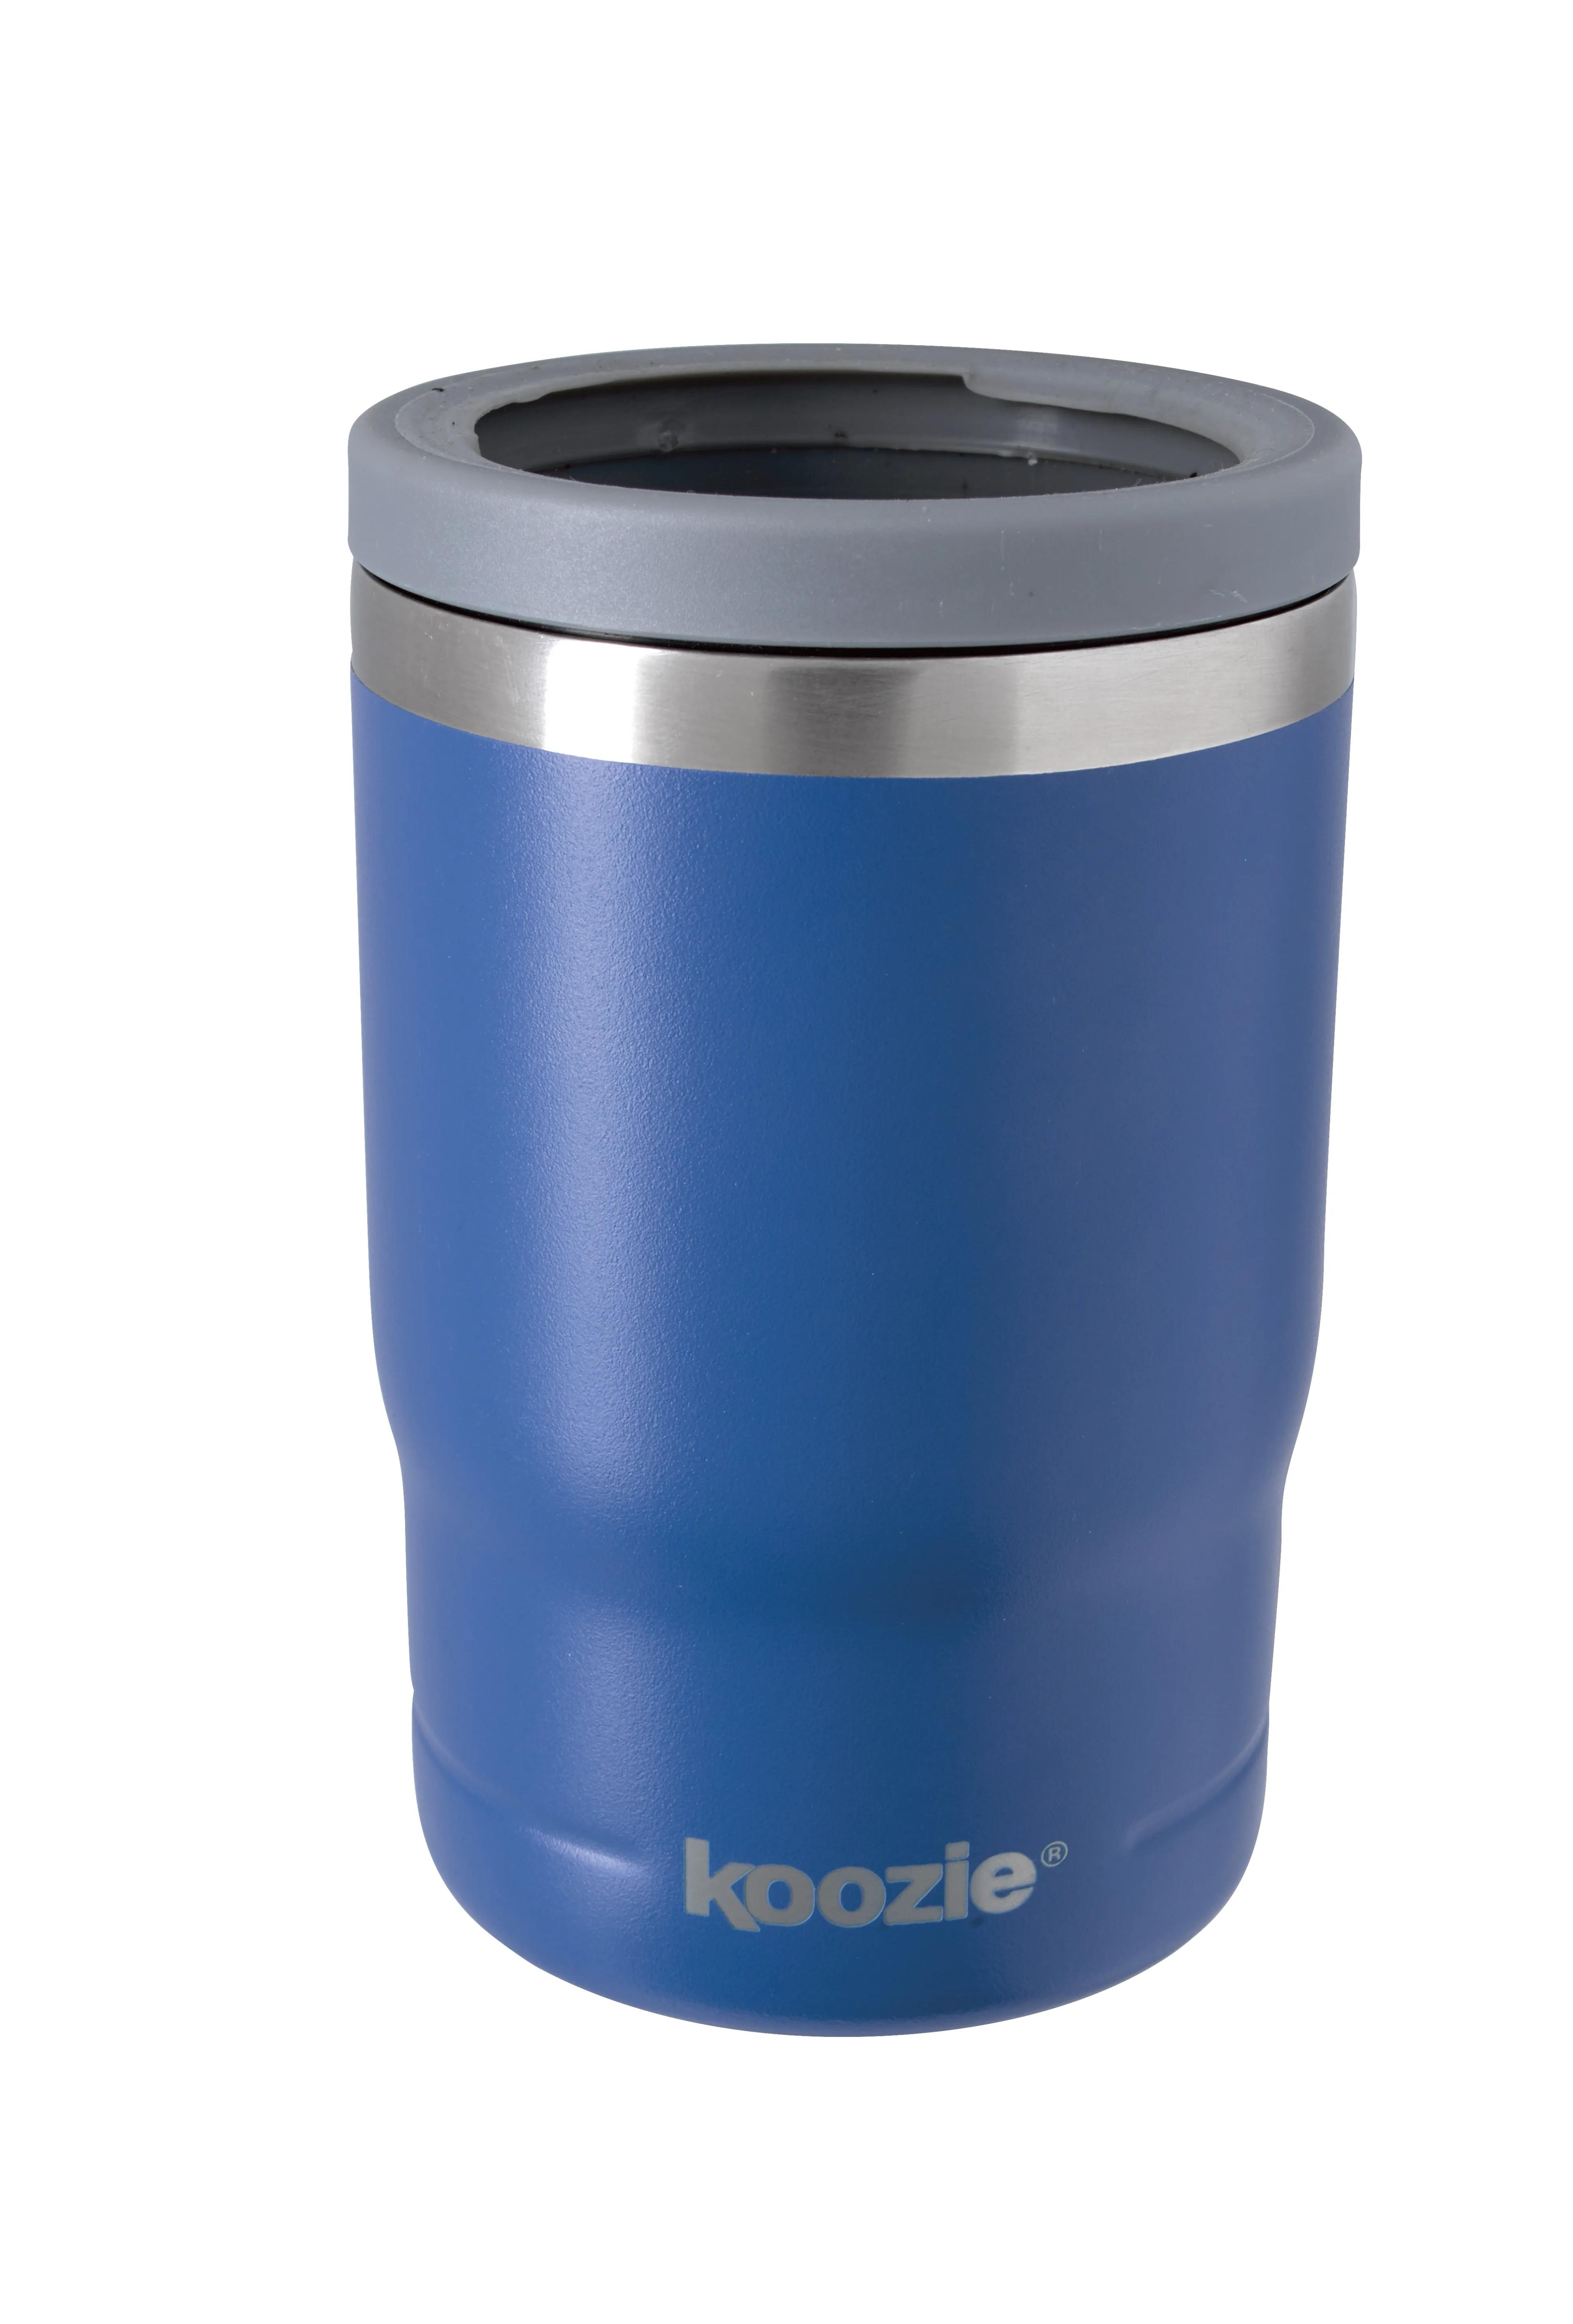 Koozie® Triple Vacuum Tumbler - 13 oz. 63 of 75